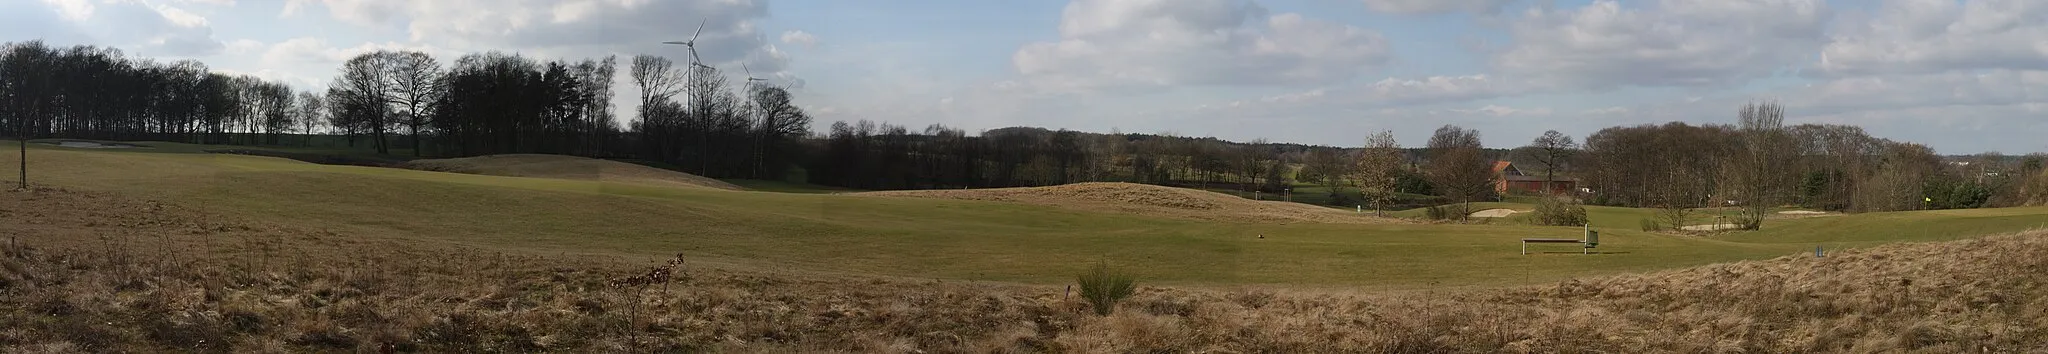 Photo showing: Golfplatz Okel; Syke-Okel; 20 km südlich von Bremen, in der Nähe der B6